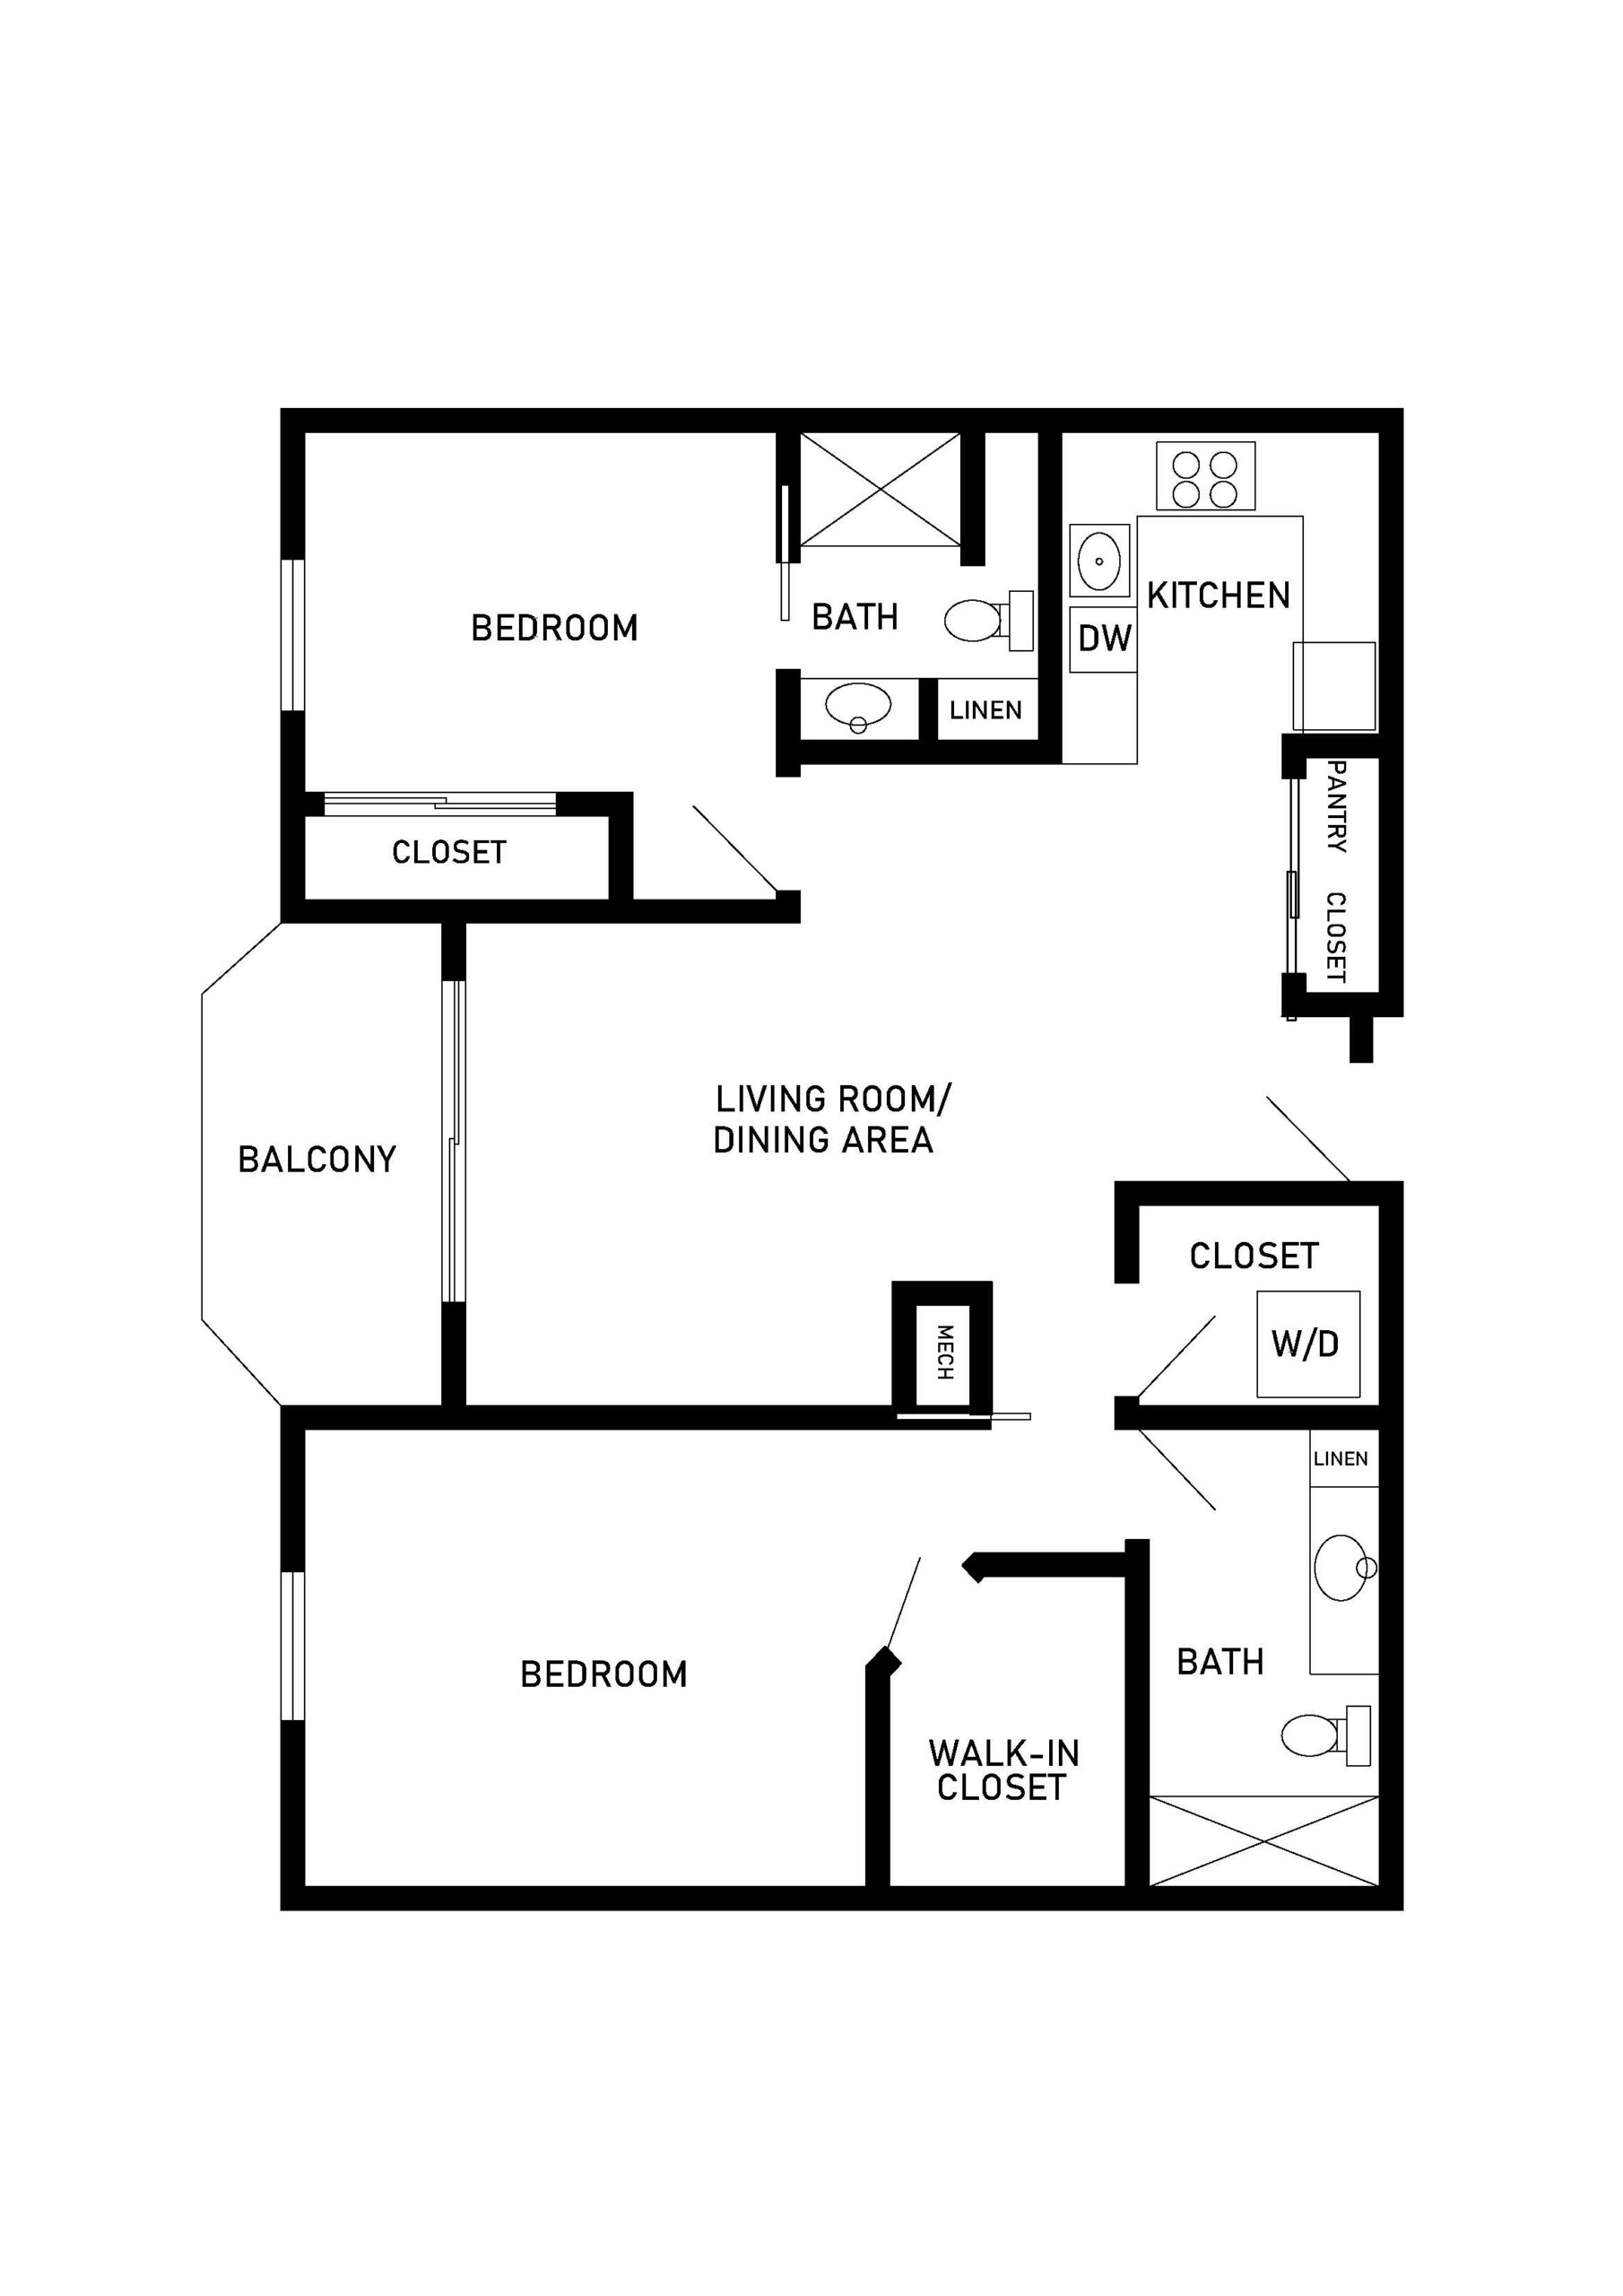 Linden 2 bed 2 bath apartment floor plan